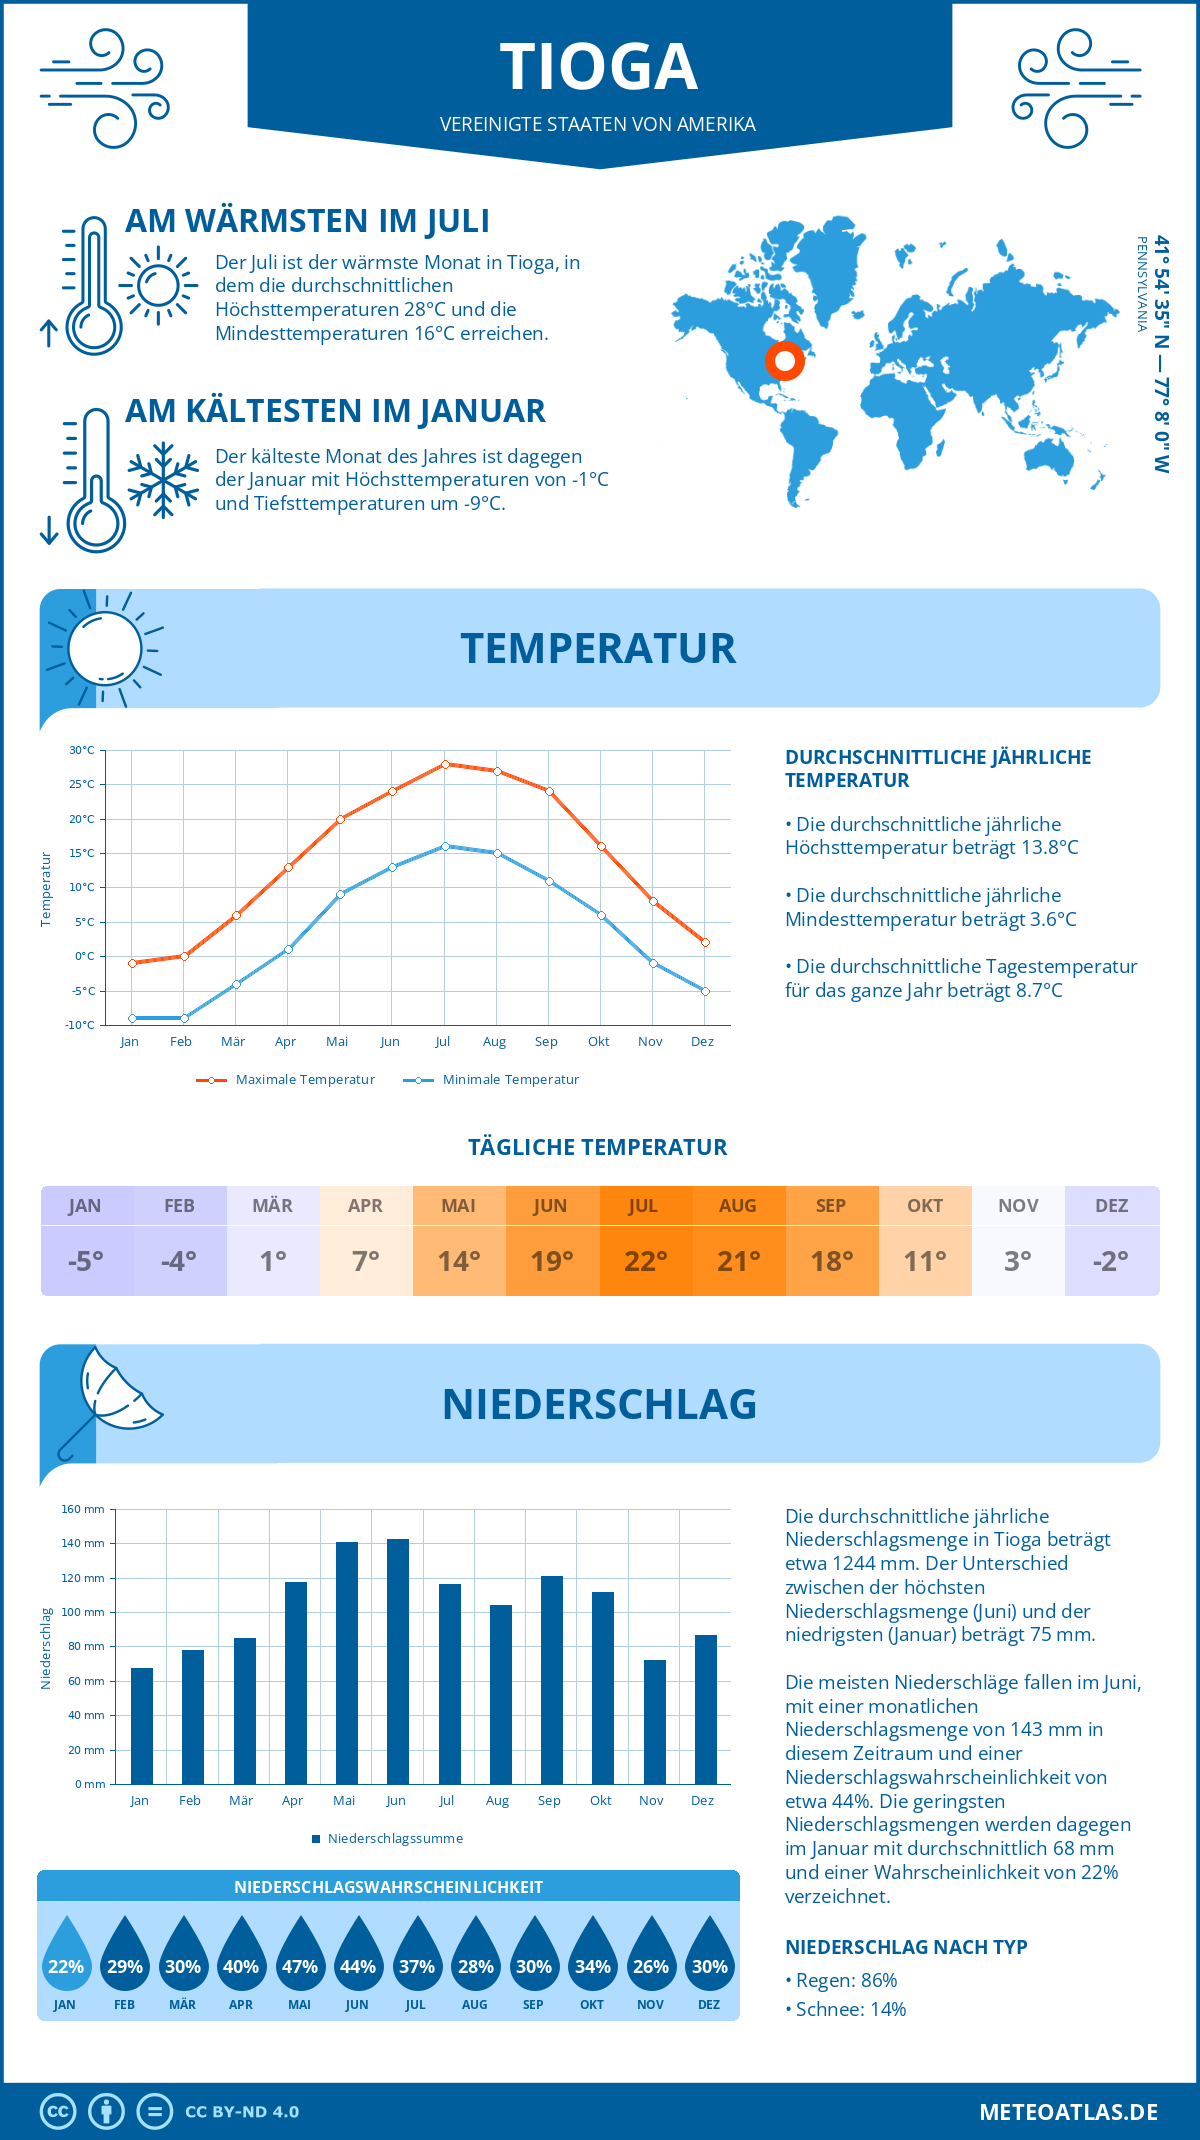 Wetter Tioga (Vereinigte Staaten von Amerika) - Temperatur und Niederschlag